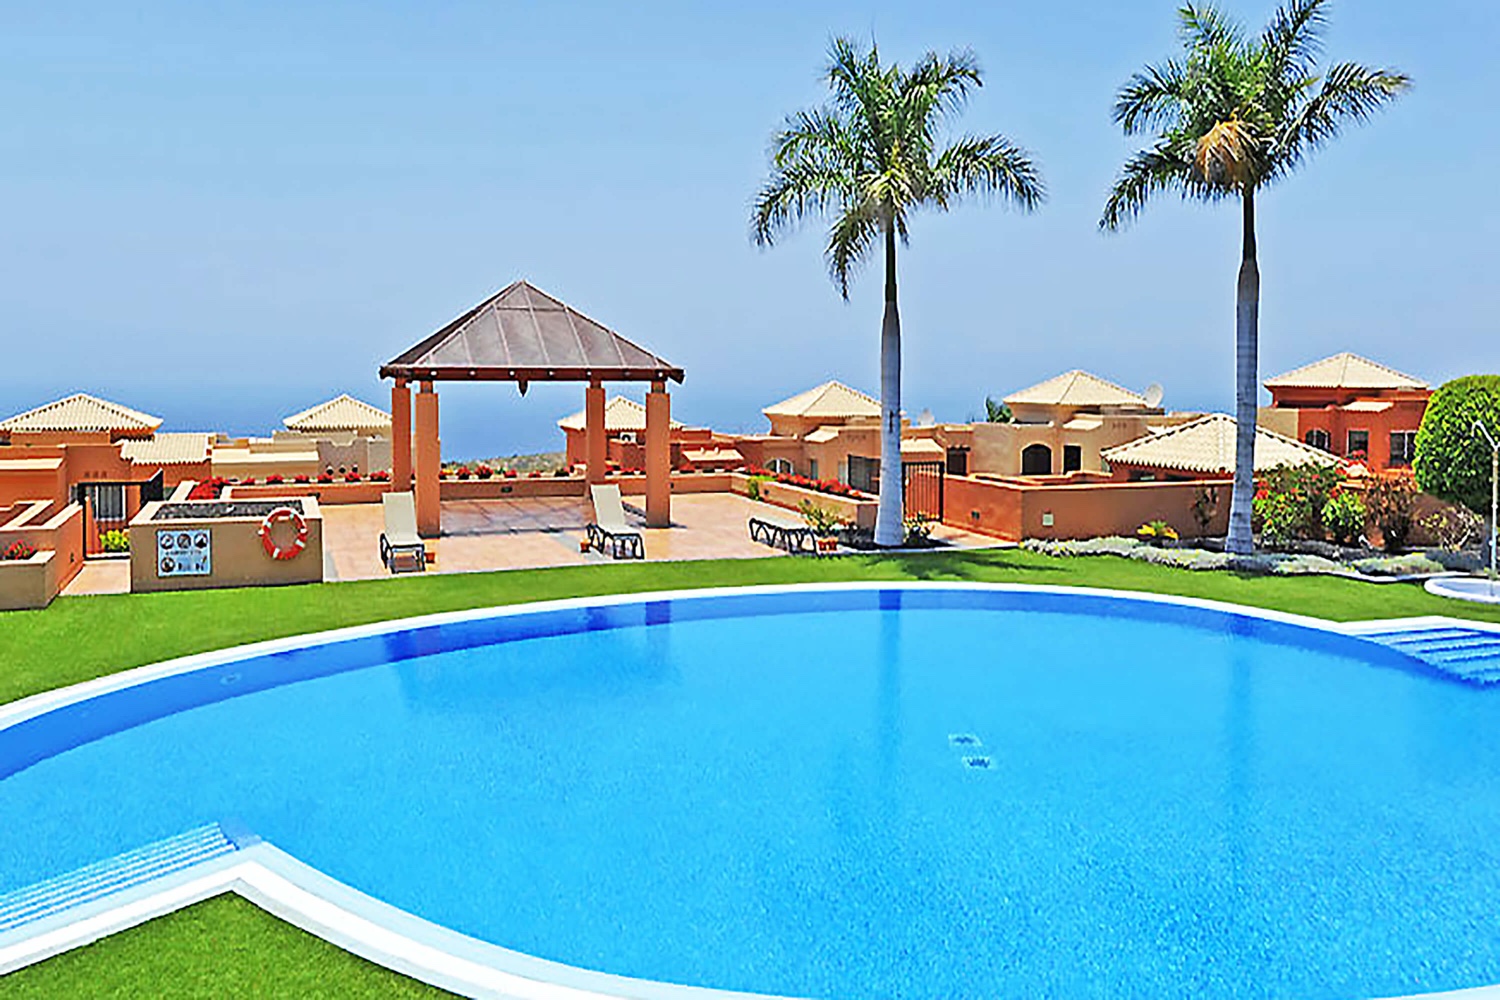 Domy na slunném jihu ostrova Tenerife, s velkým společným bazénem a blízko golfového hřiště a pláží Costa Adeje